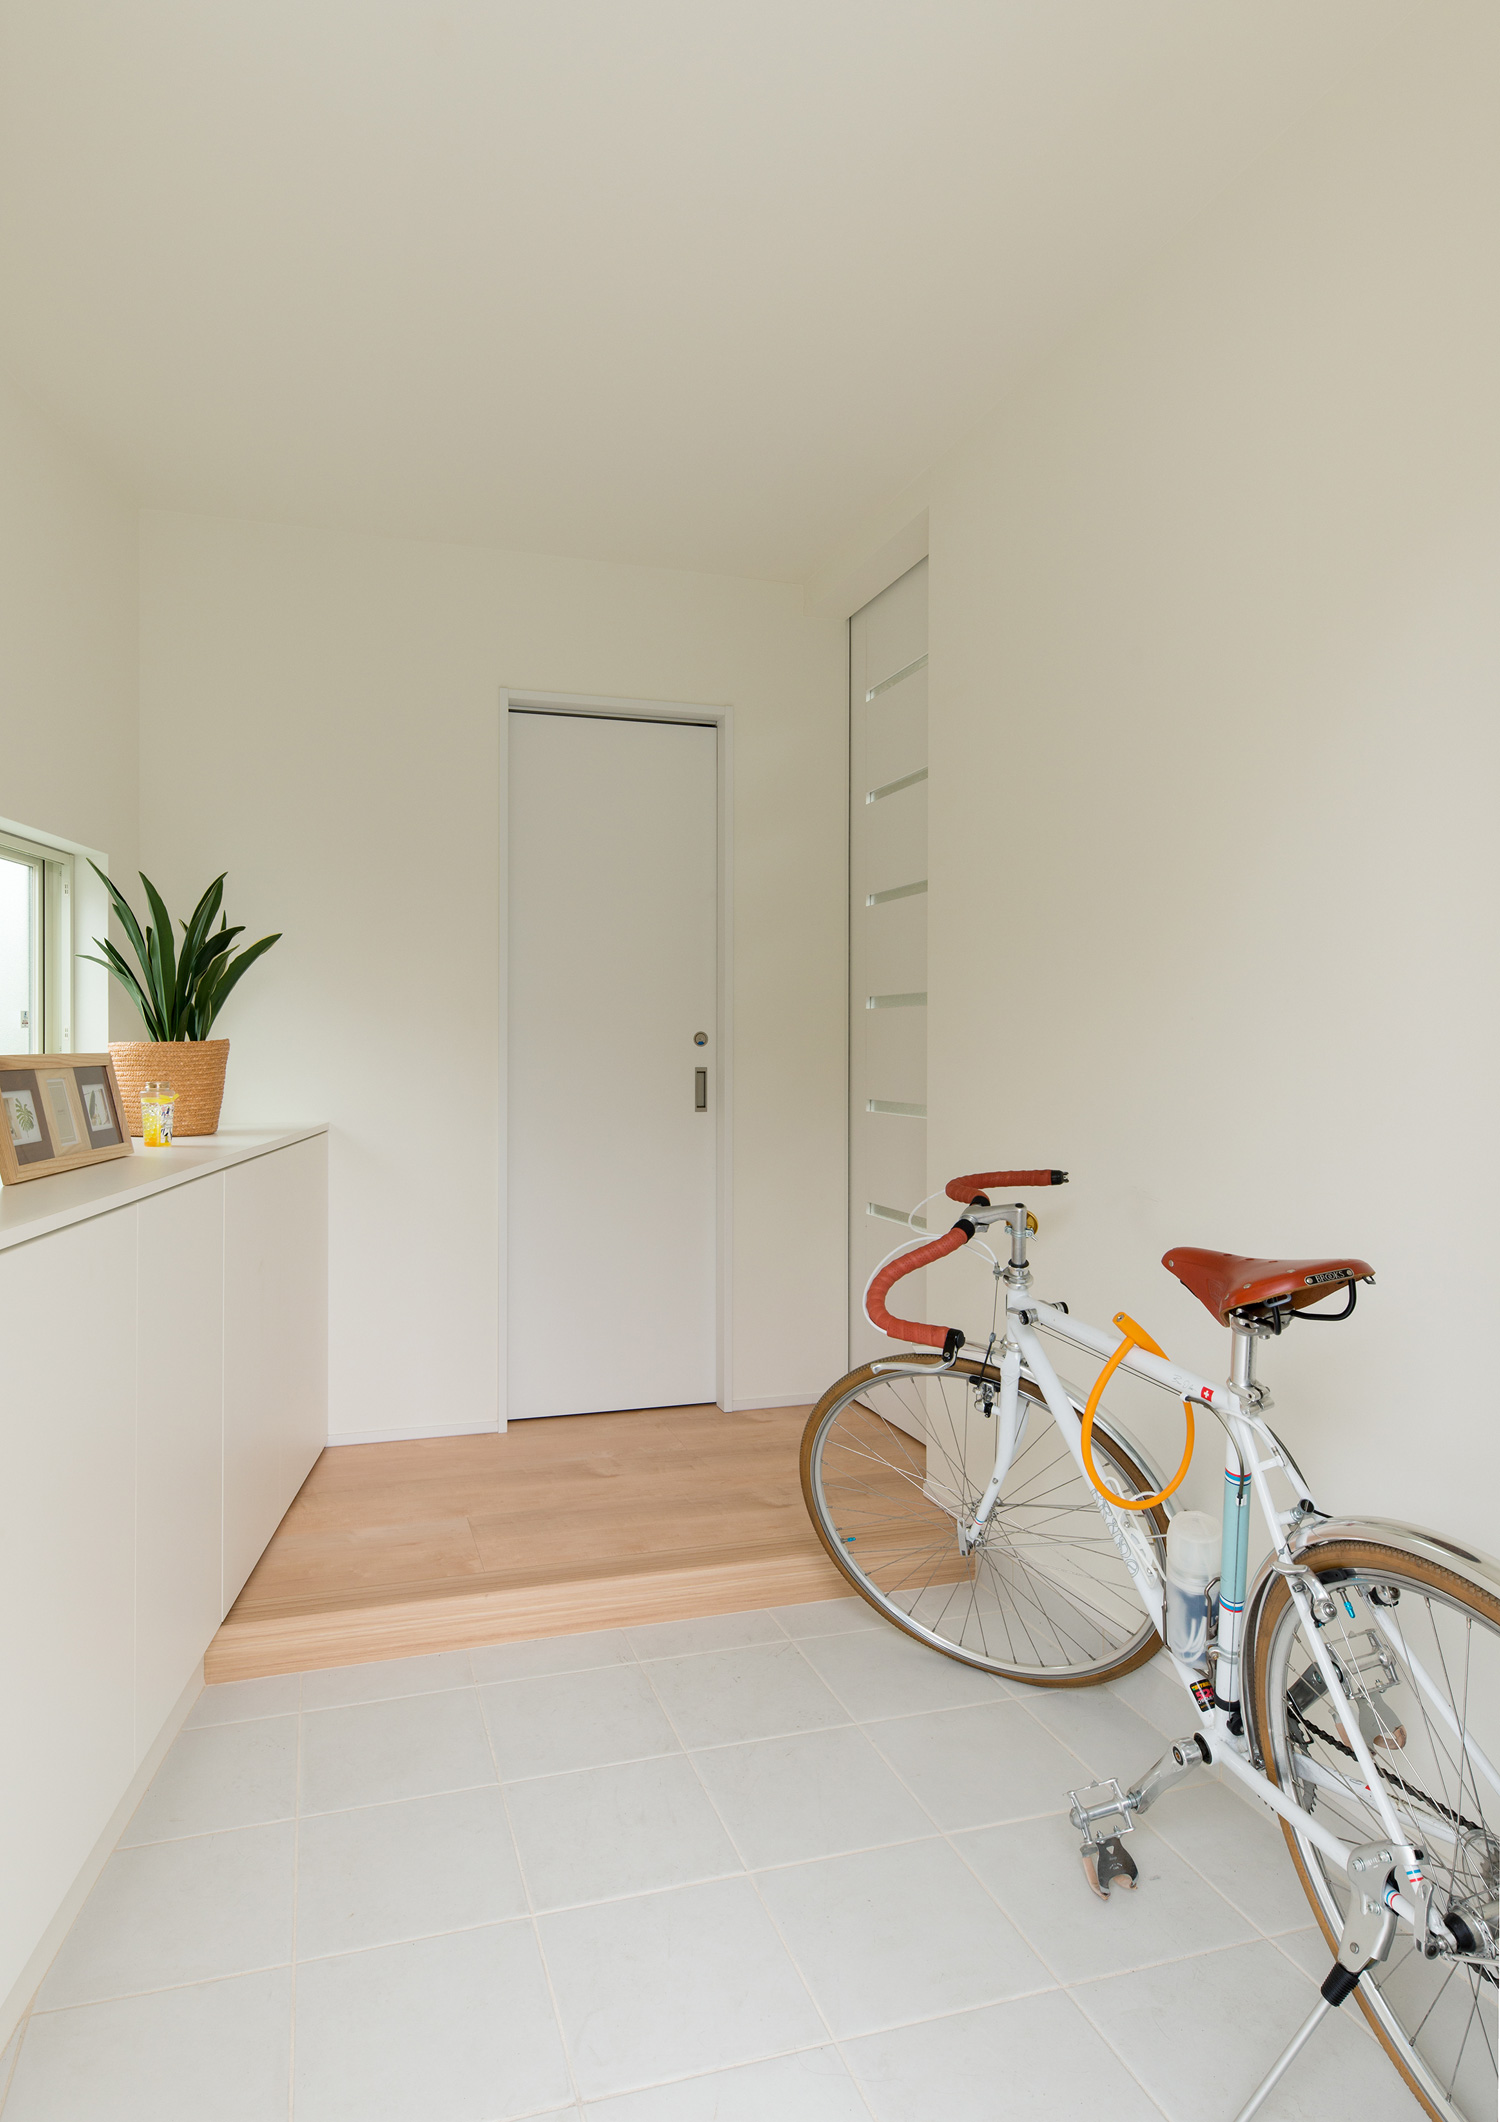 自転車が一台止められた白い壁の玄関・デザイン住宅